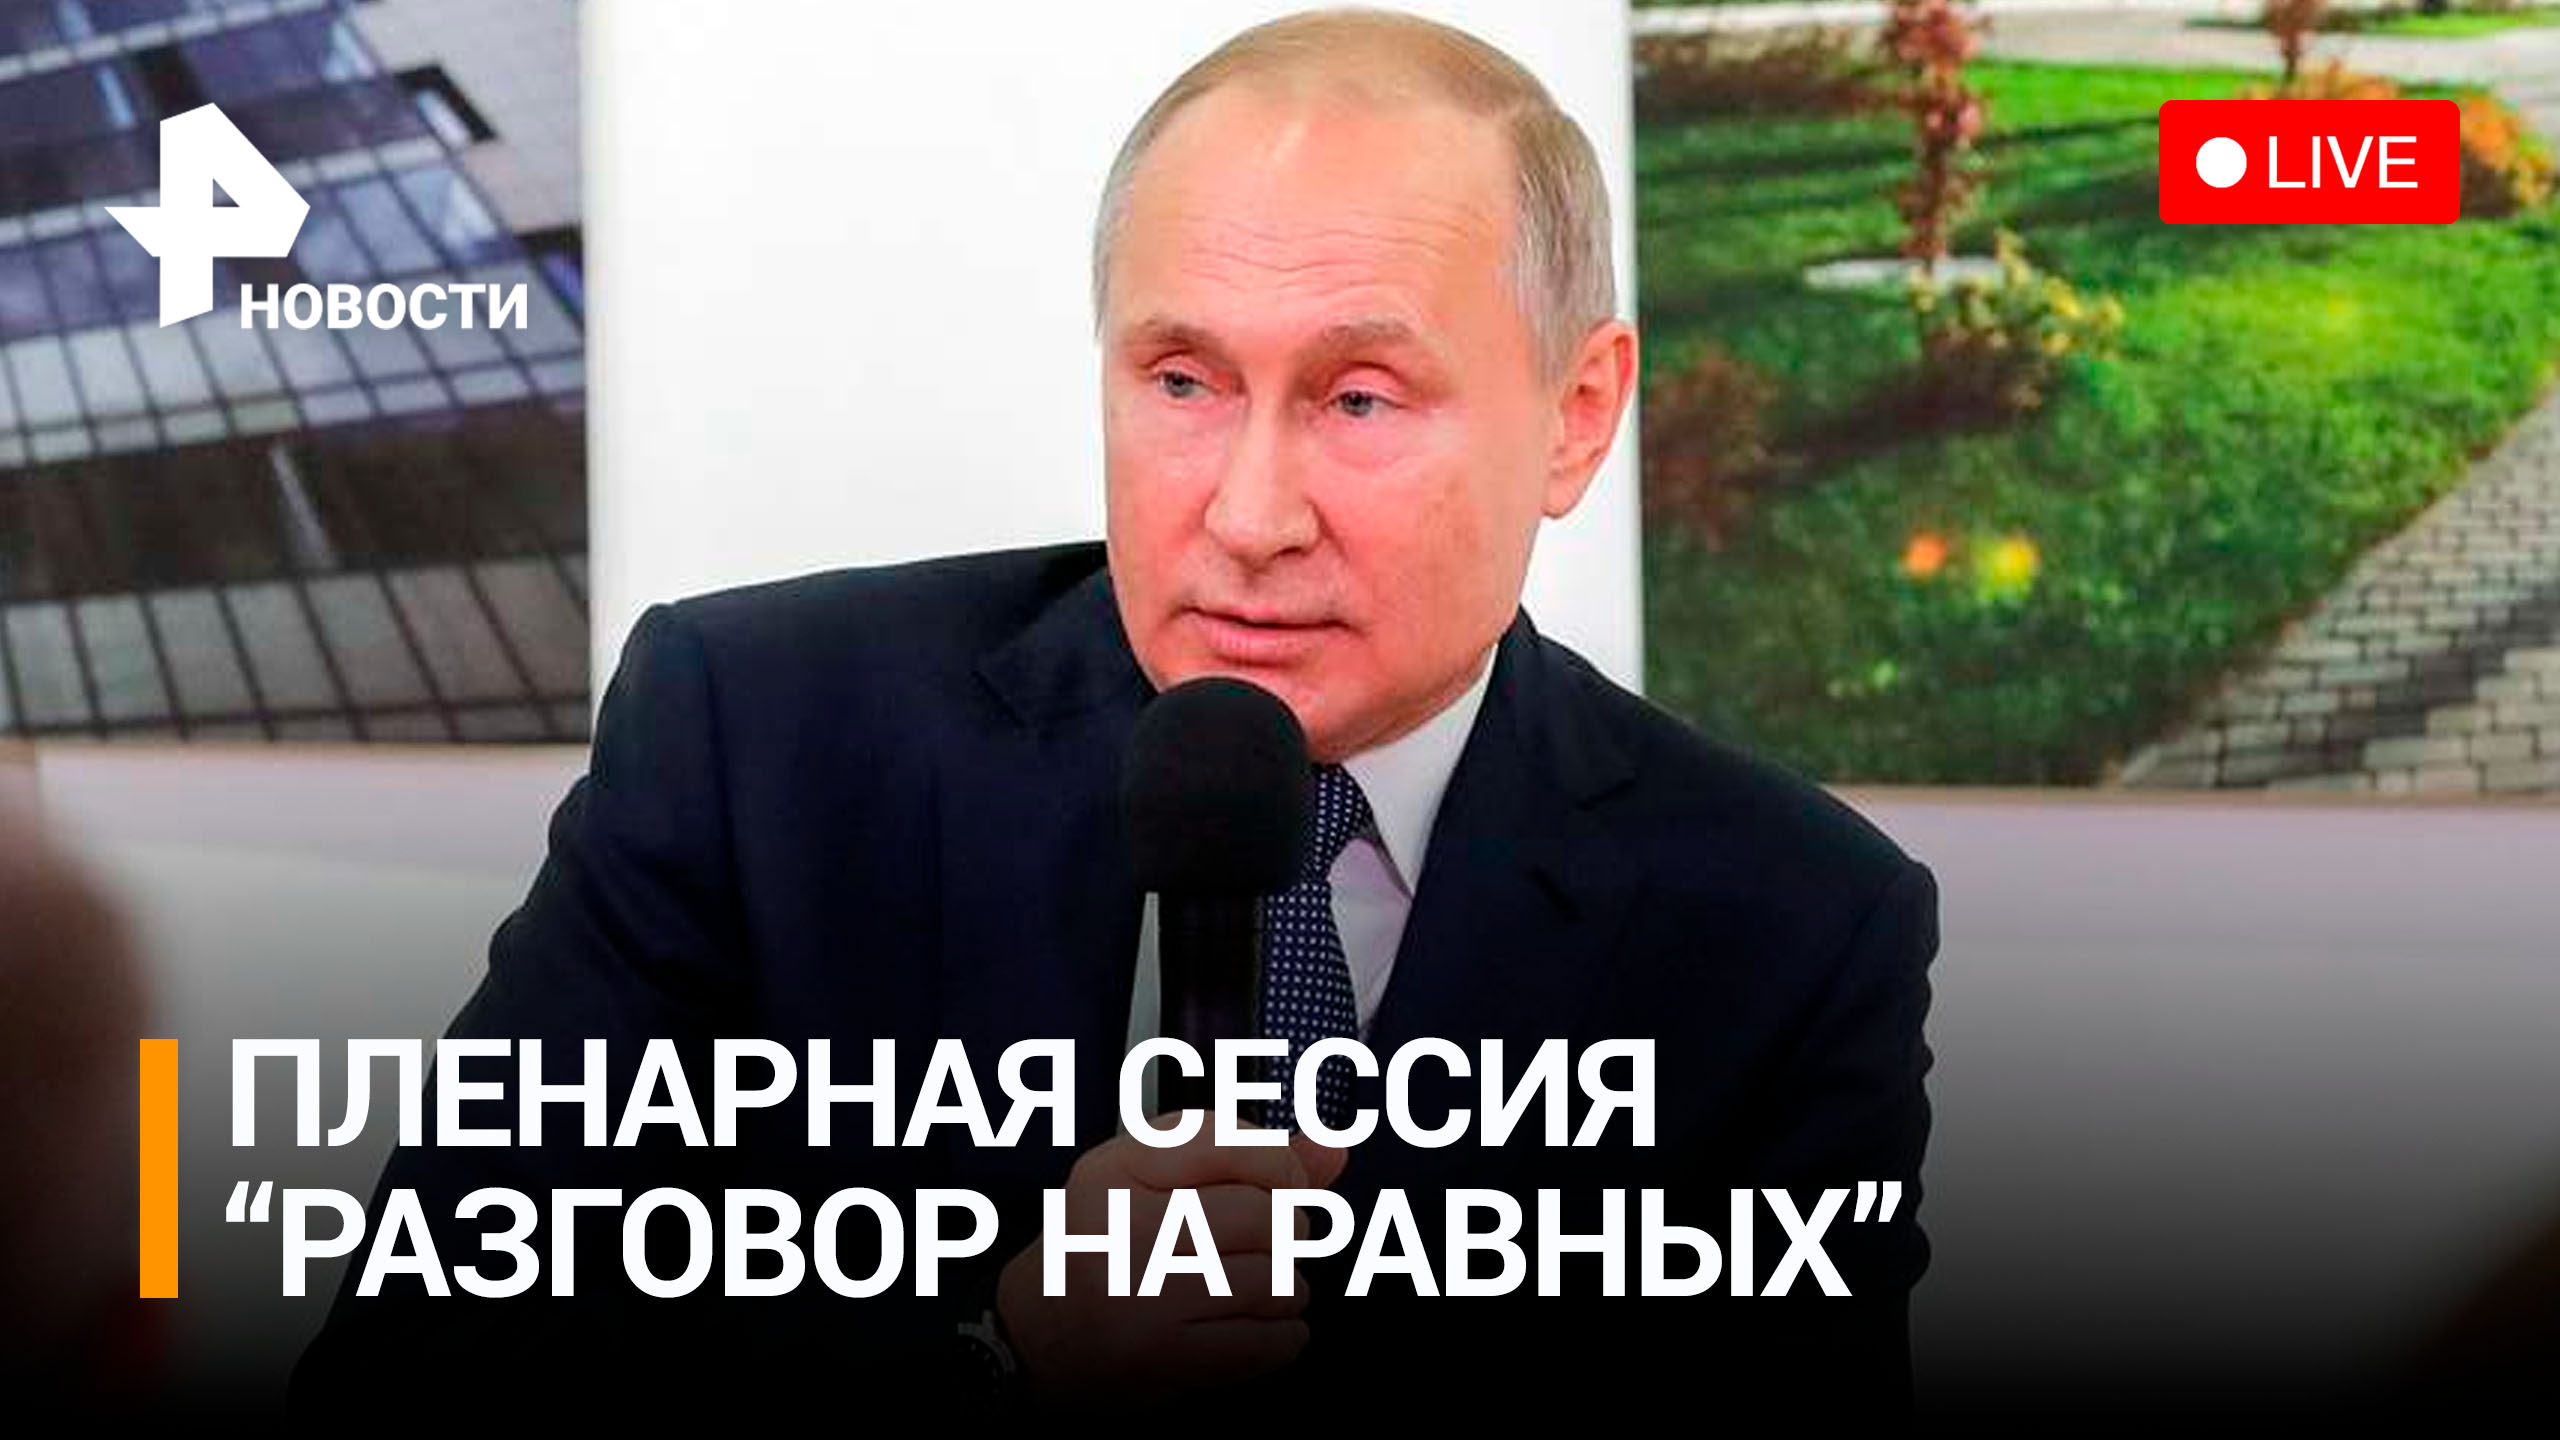 Владимир Путин на пленарной сессии "Разговор на равных". Прямая трансляция